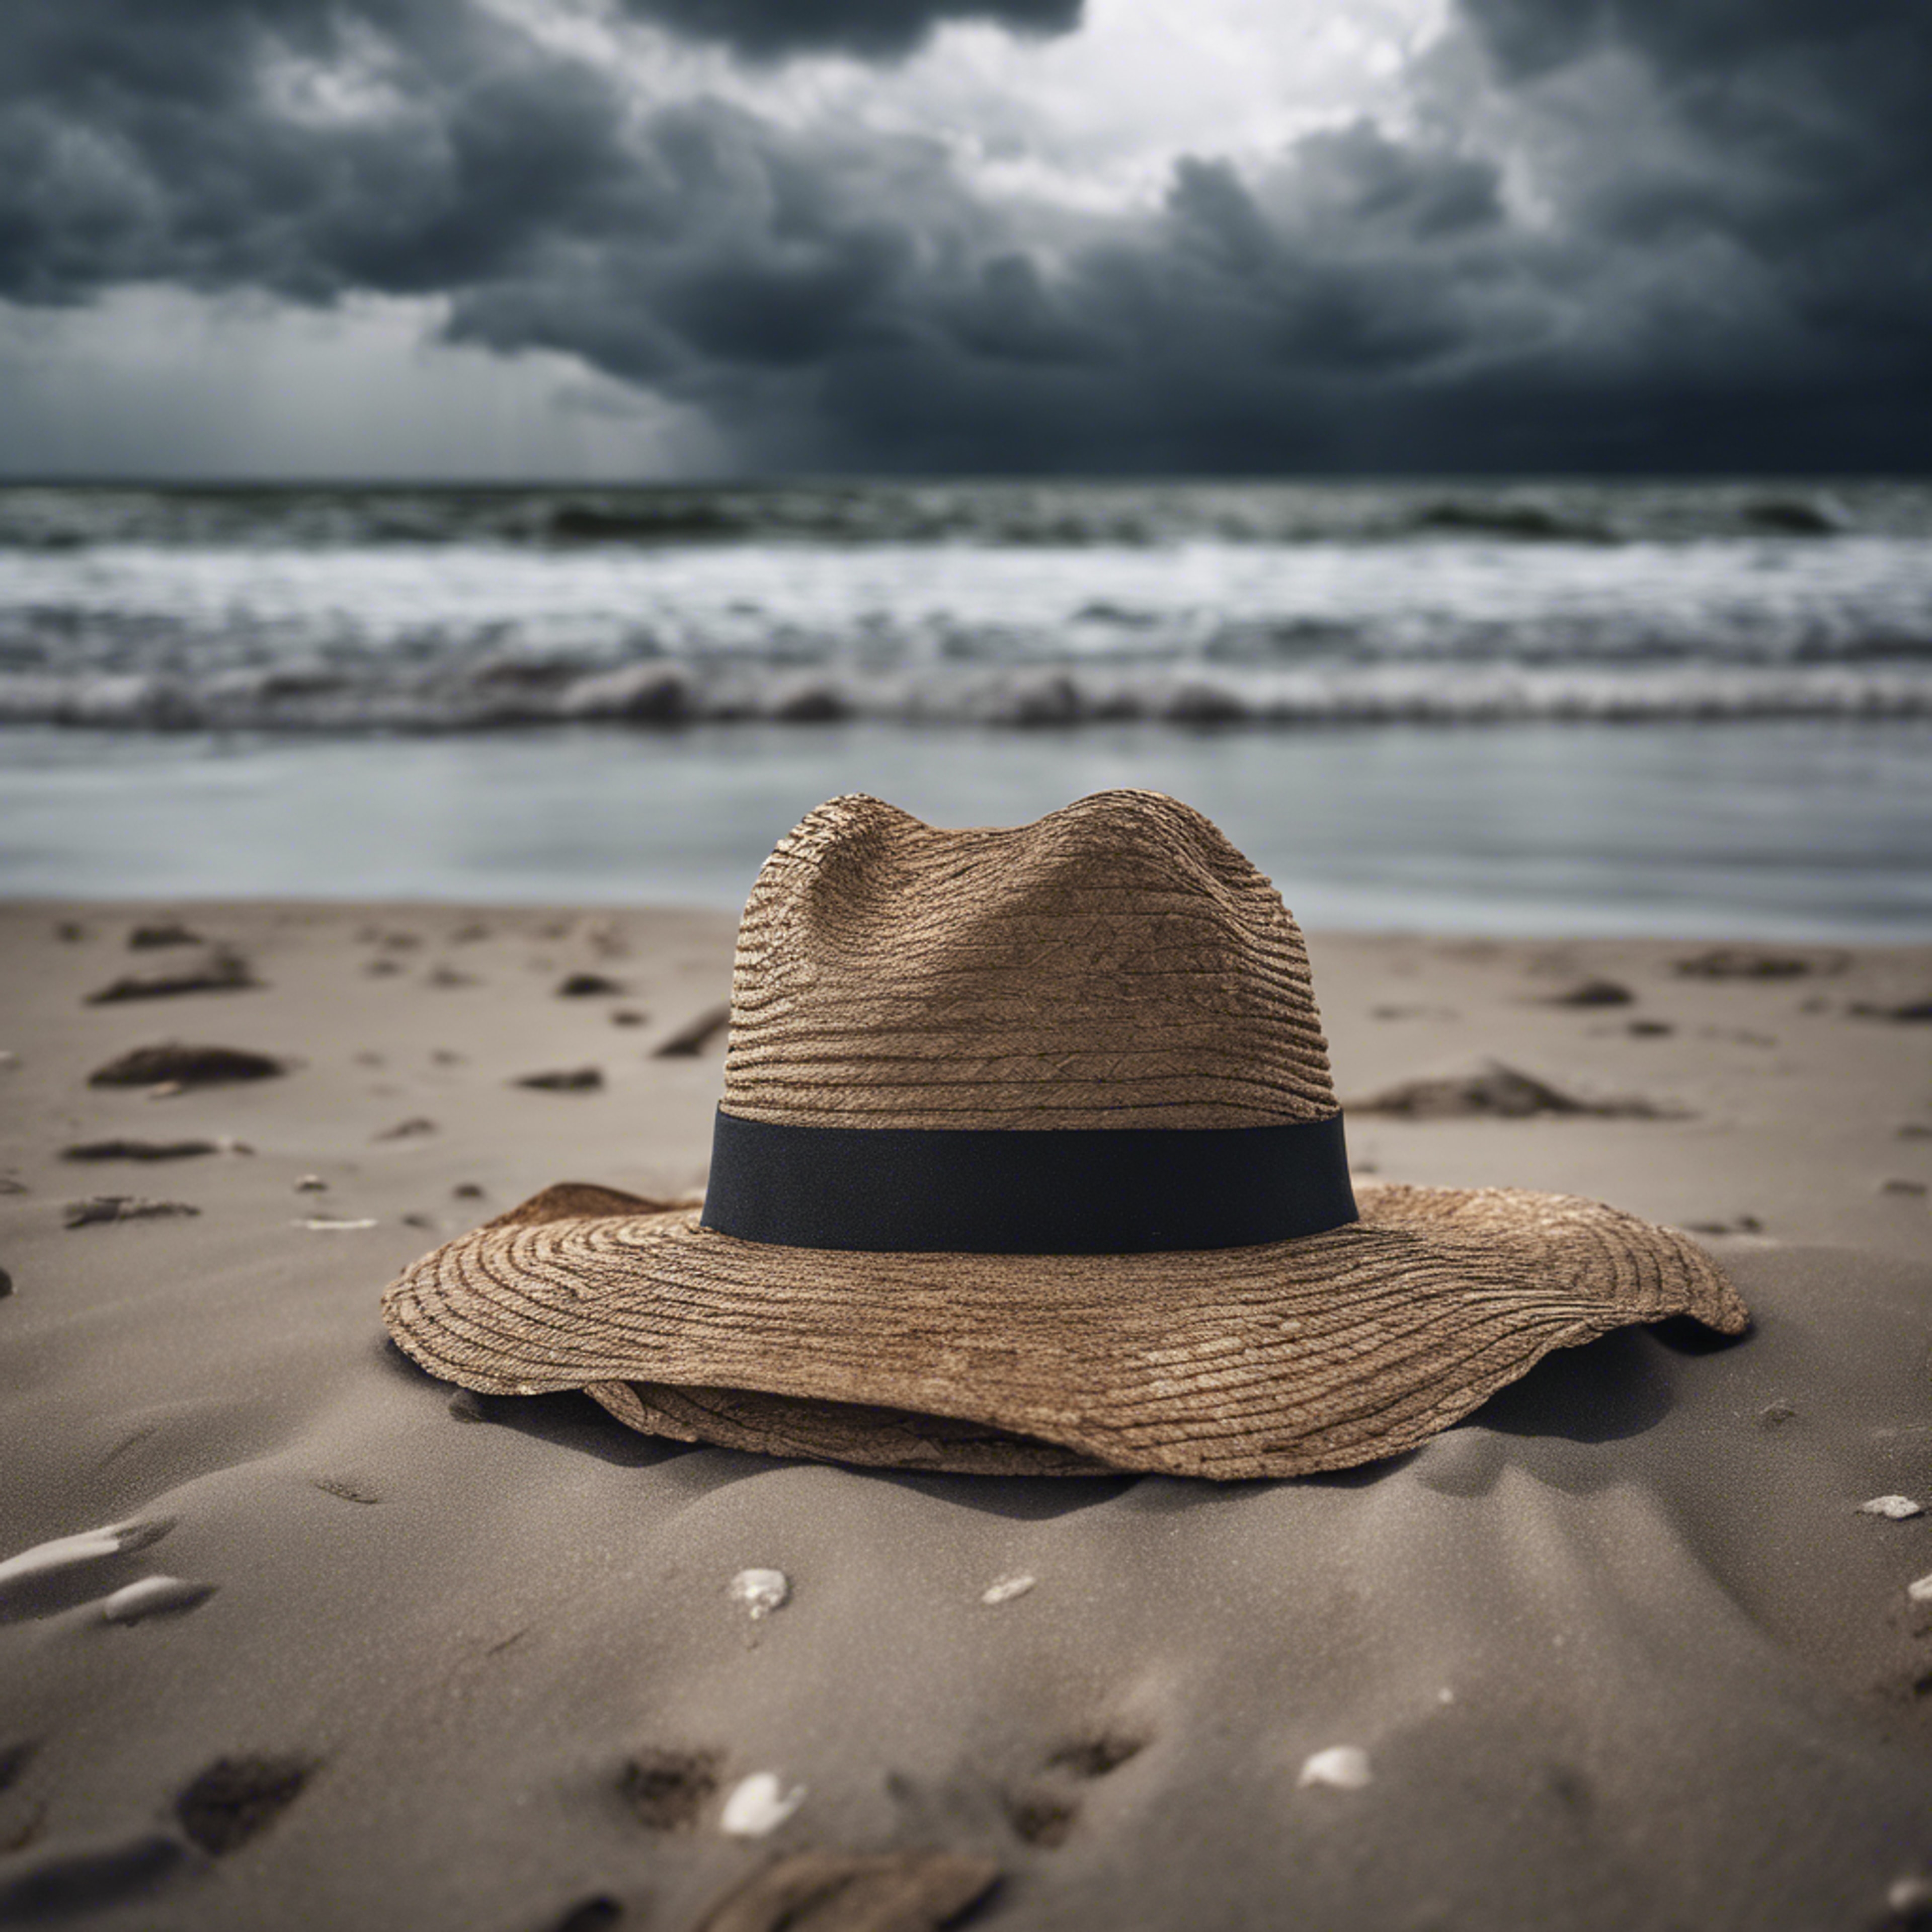 A single, forsaken hat blowing across a desolate beach under a stormy sky. Тапет[22c522374a7d402da3d5]